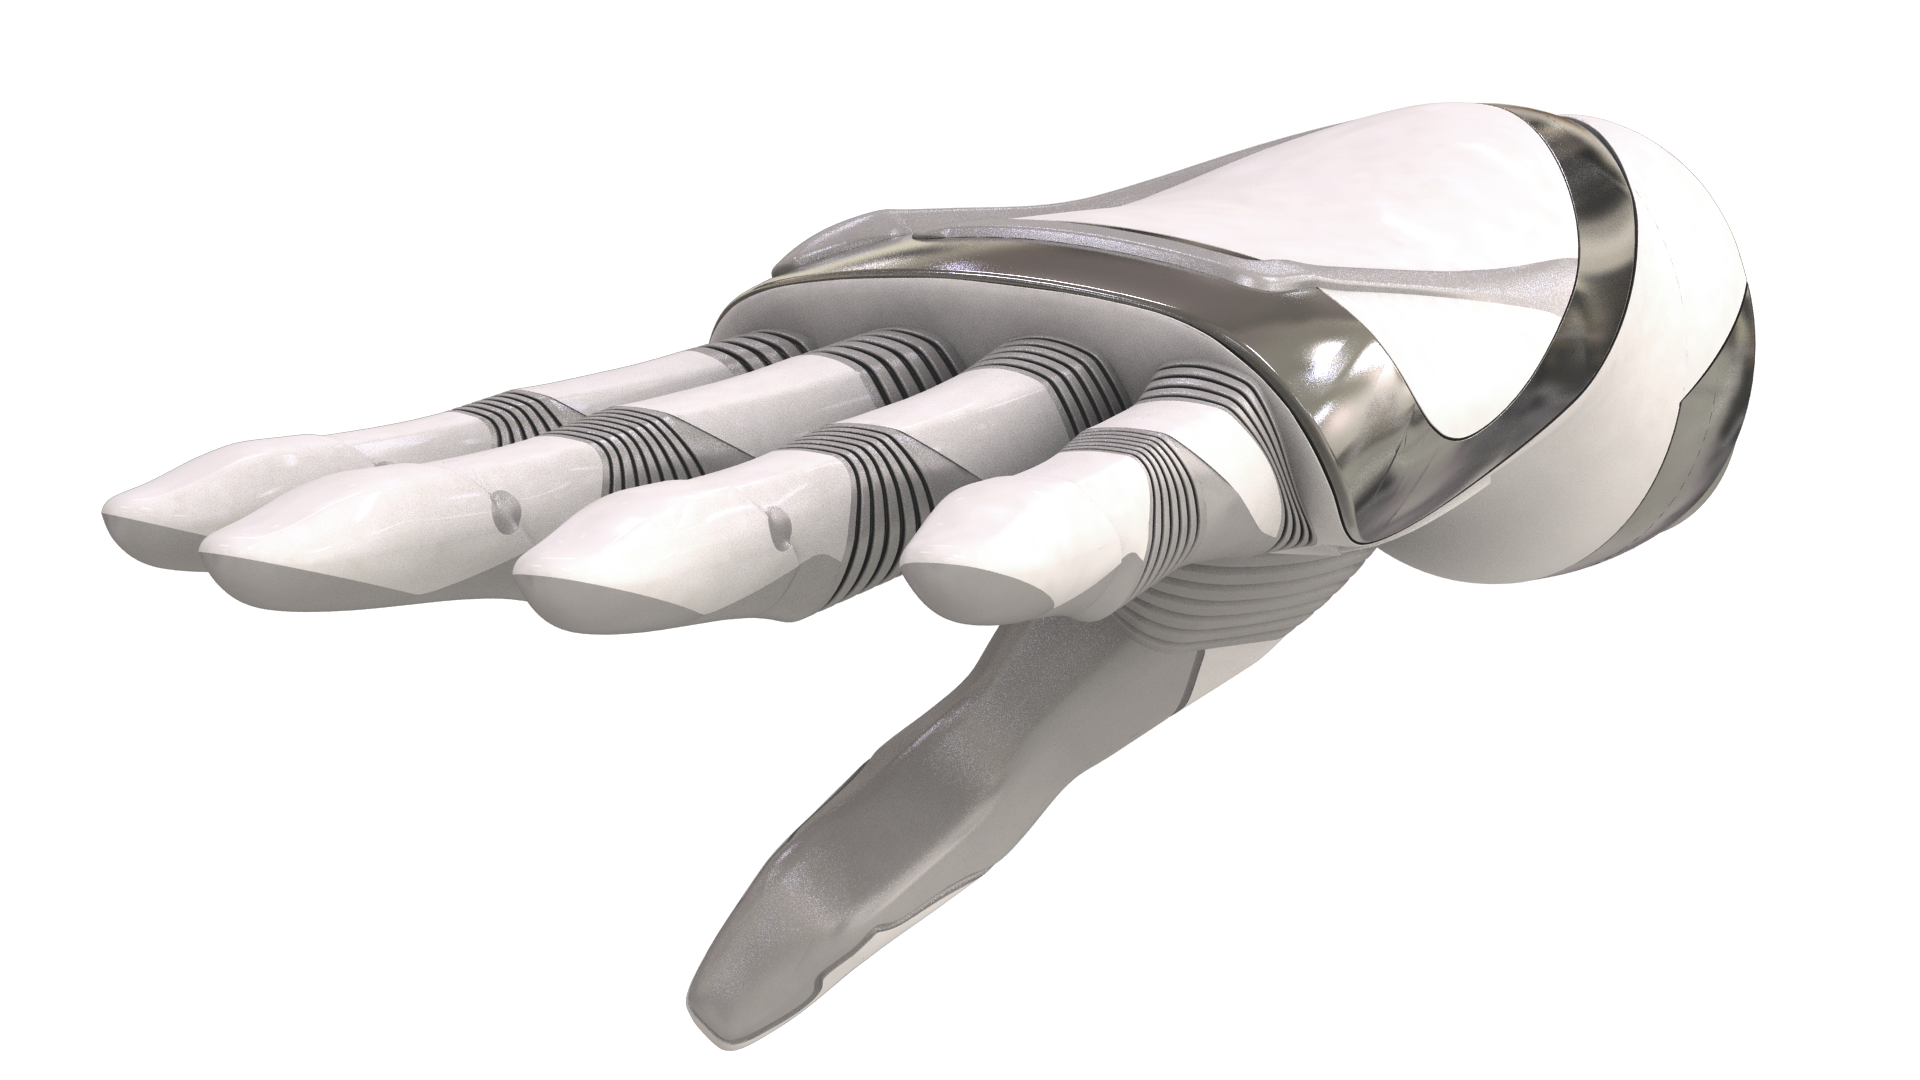 La mano bionica diventa bella e indossabile. Sarà impiantata senza intervento chirurgico